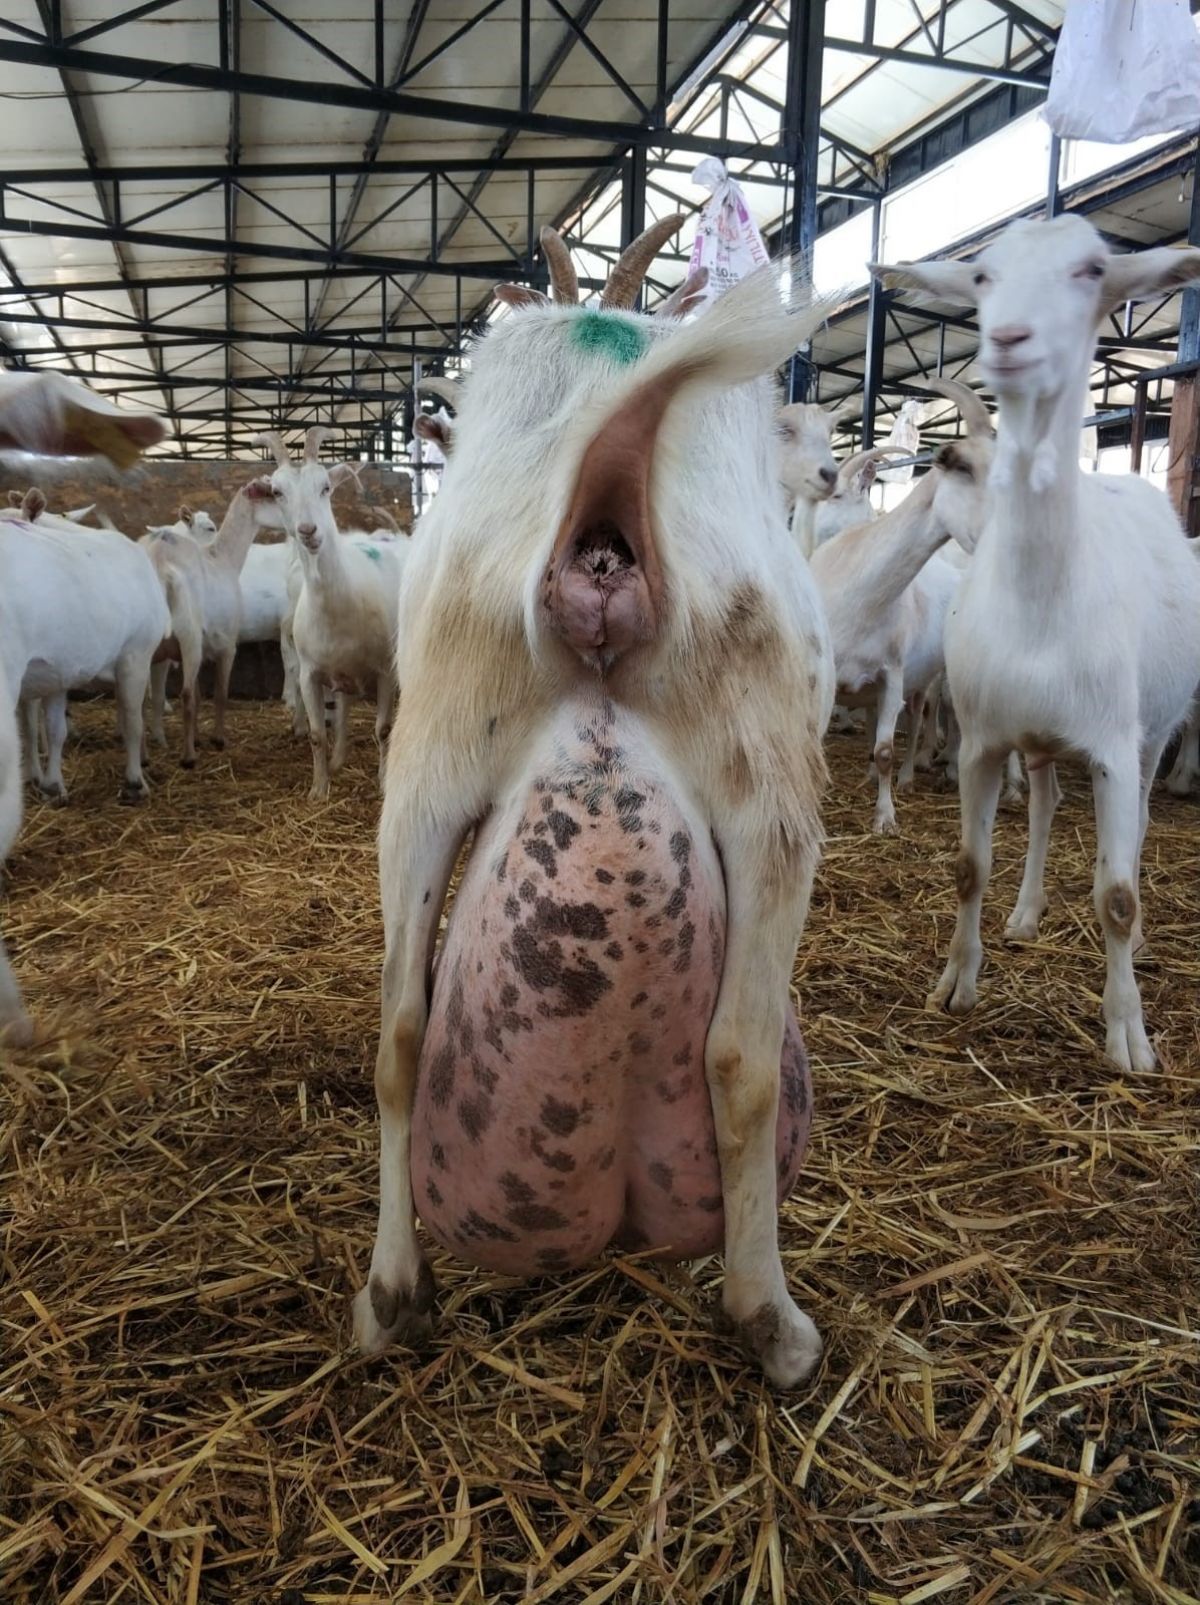 Bursa da ağırlığının yarısı kadar süt veren keçi şaşırttı #12